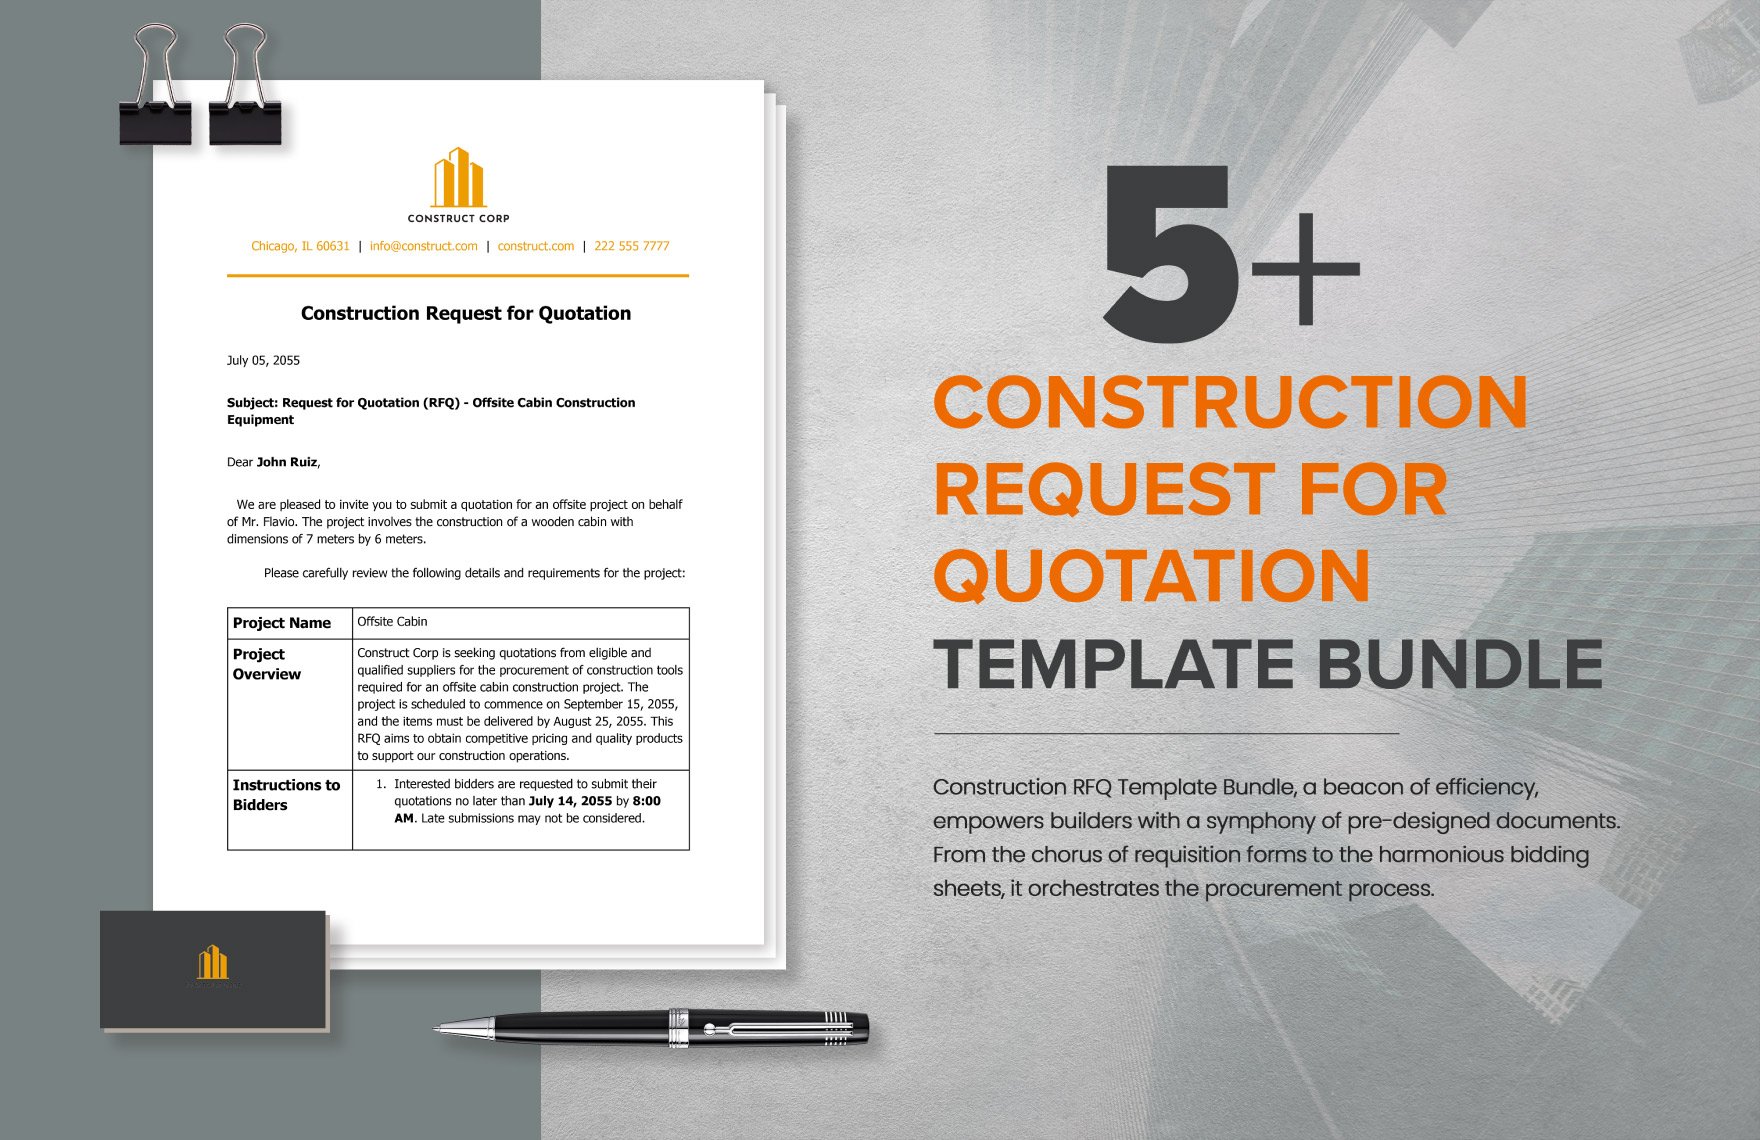 5+ Construction Request for Quotation Template Bundle